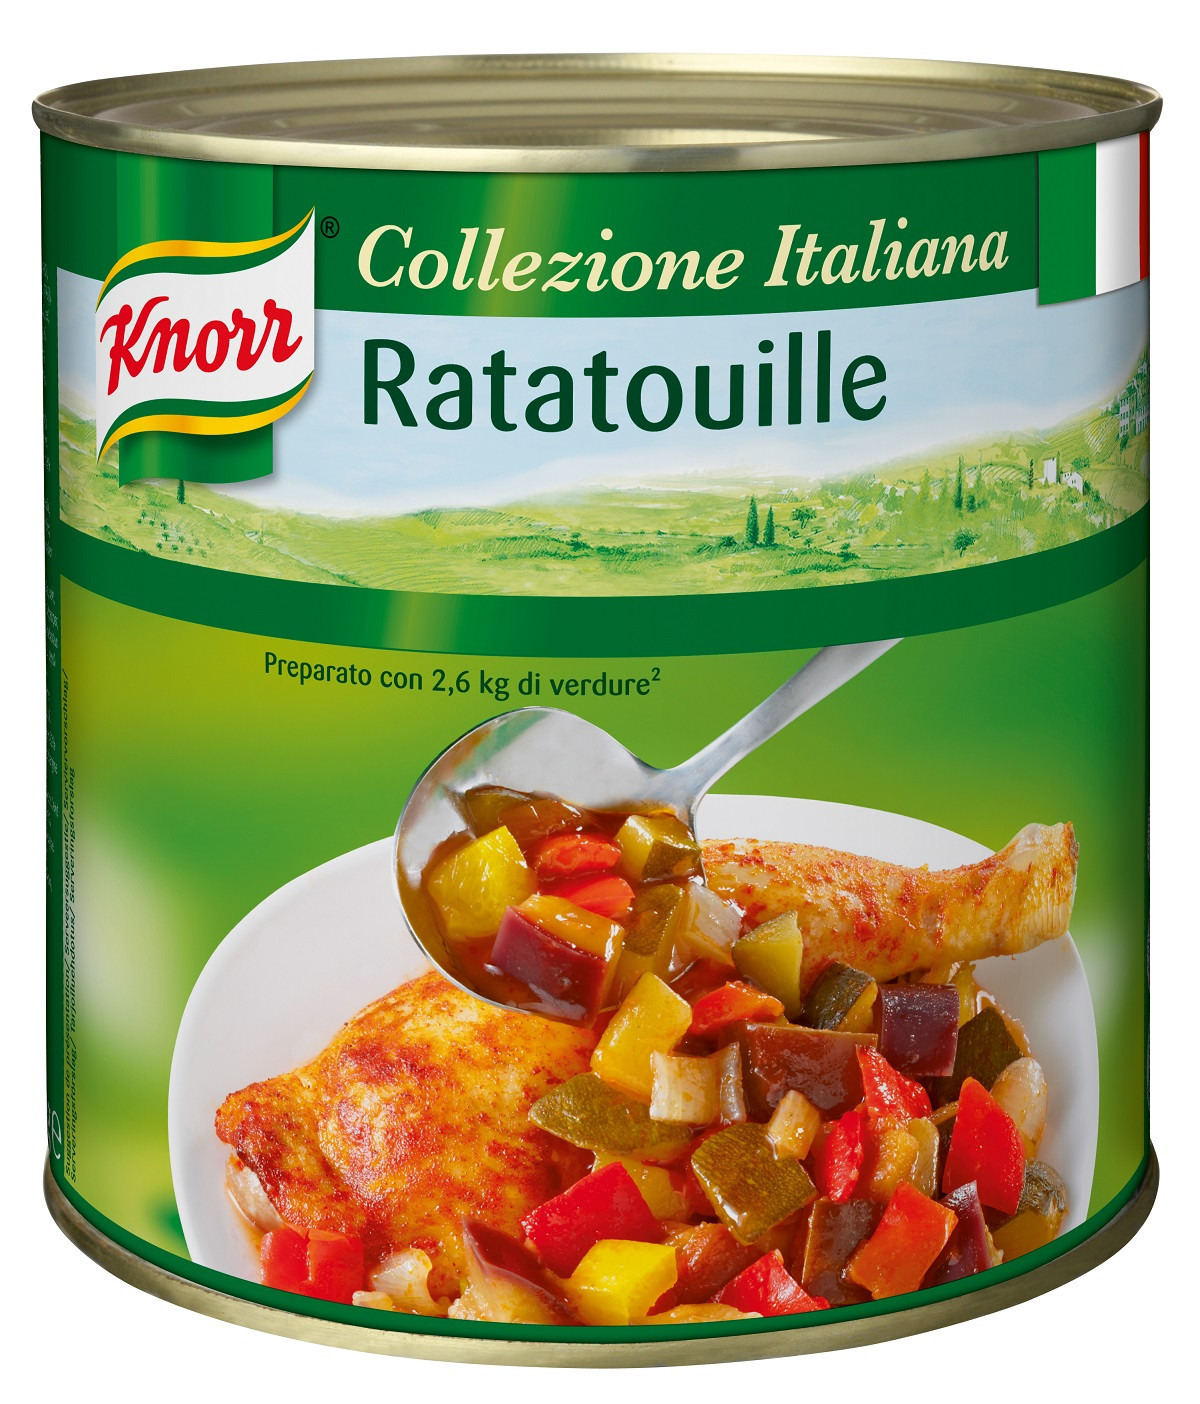 Knorr Ratatouille 3L Collezione Italiana